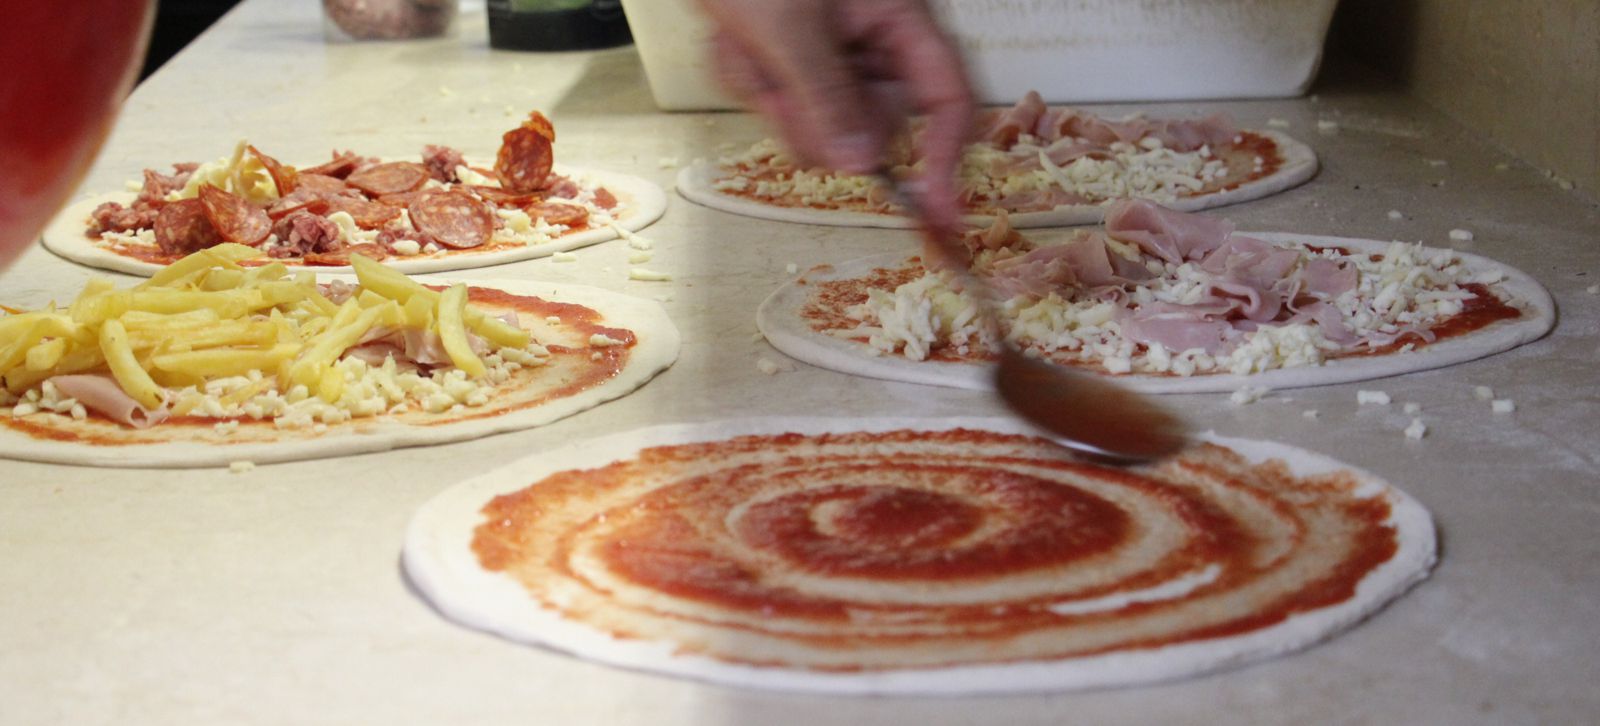 Pizza in preparazione | Ristorante Olimpo - Brescia